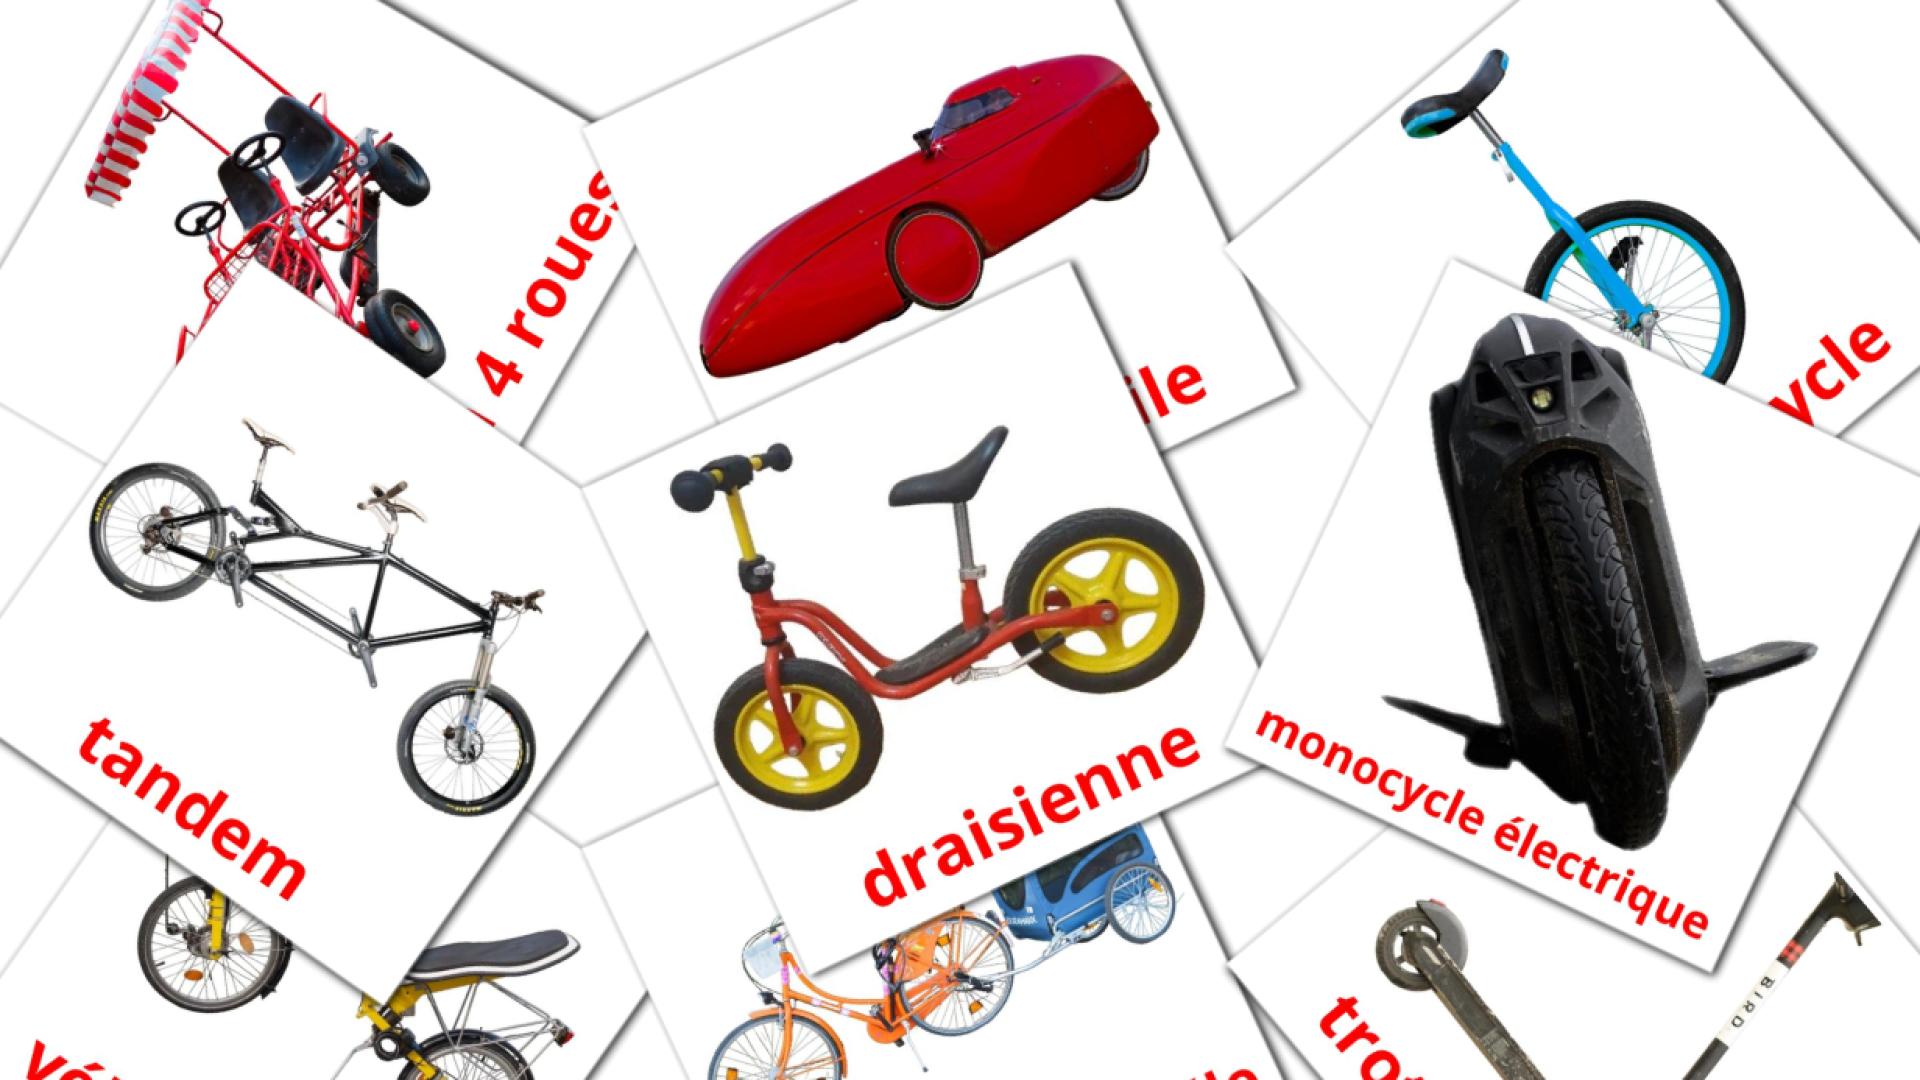 16 Véhicules Vélo flashcards